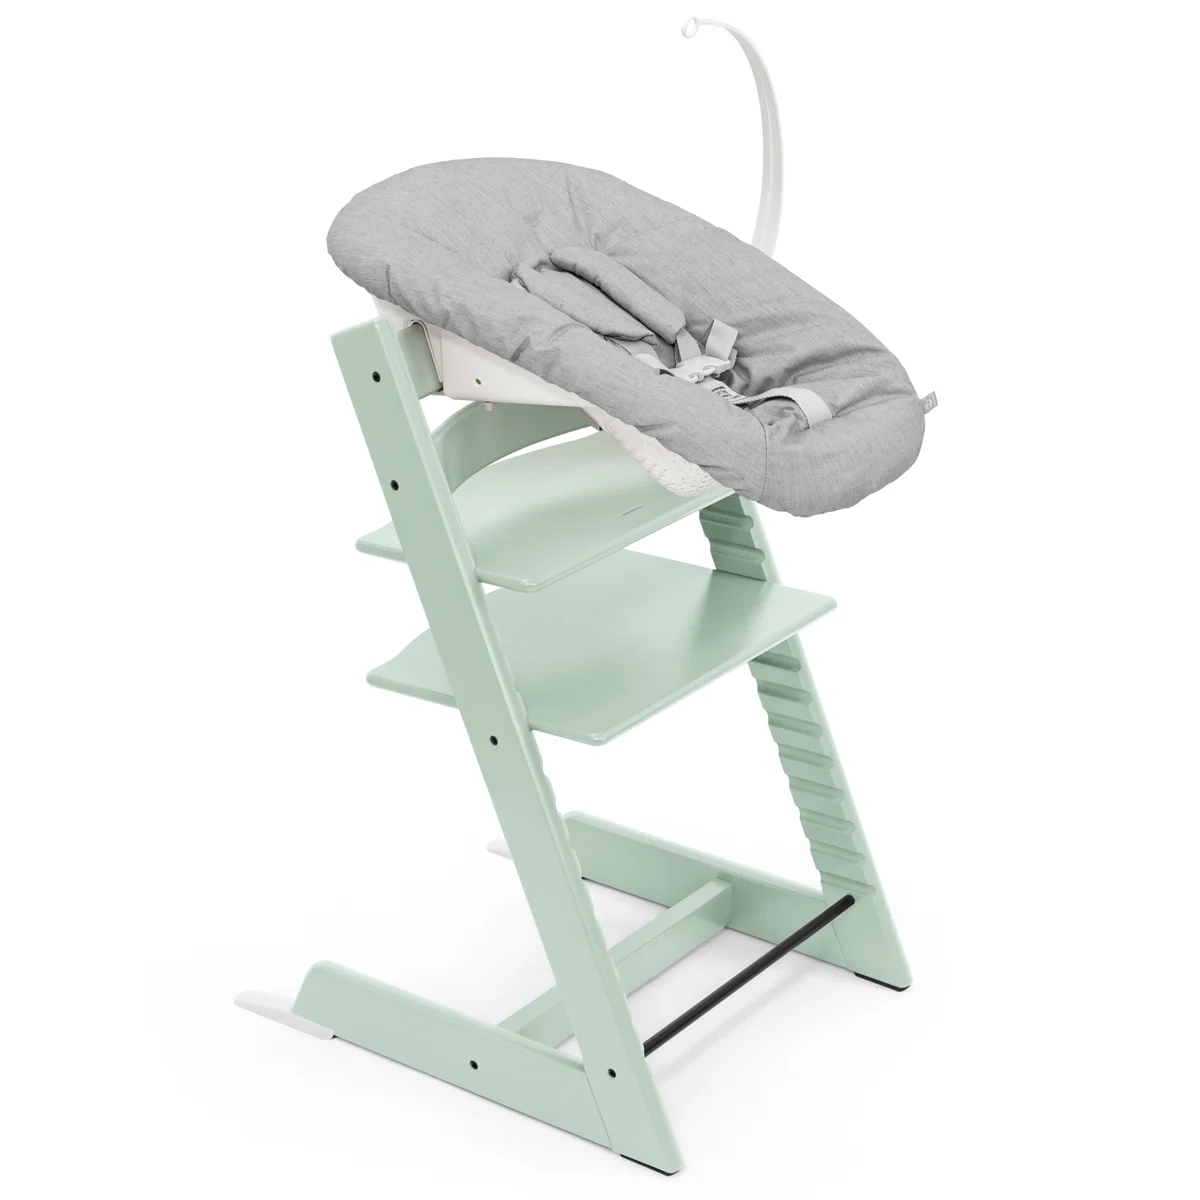 Набор Stokke Newborn Tripp Trapp Soft Mint: стульчик и кресло для новорожденных (k.100135.52) - фото 3